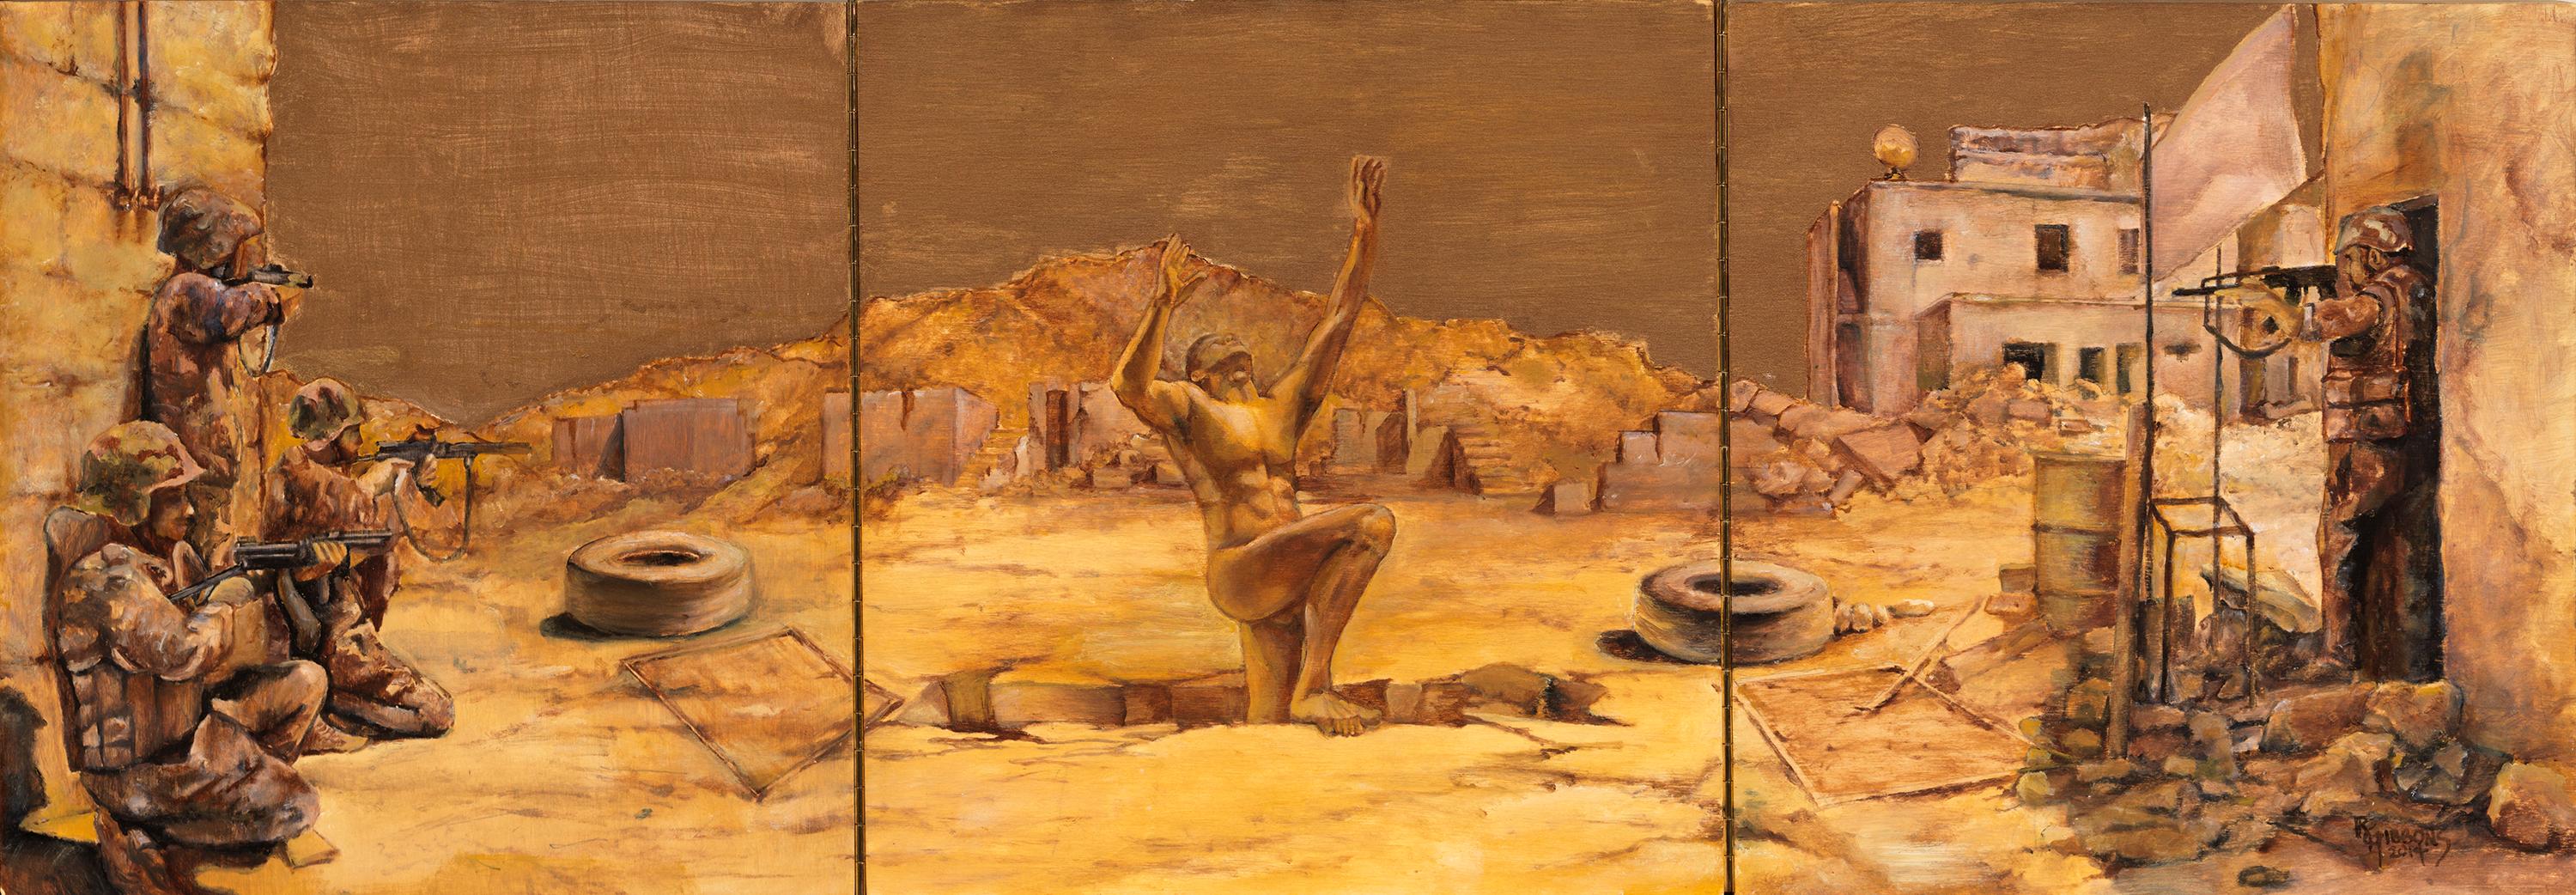 Richard Gibbons Figurative Painting – Uprising Triptychon, männlicher Akt, hochgestreckt, umgeben von bewaffneten Truppen